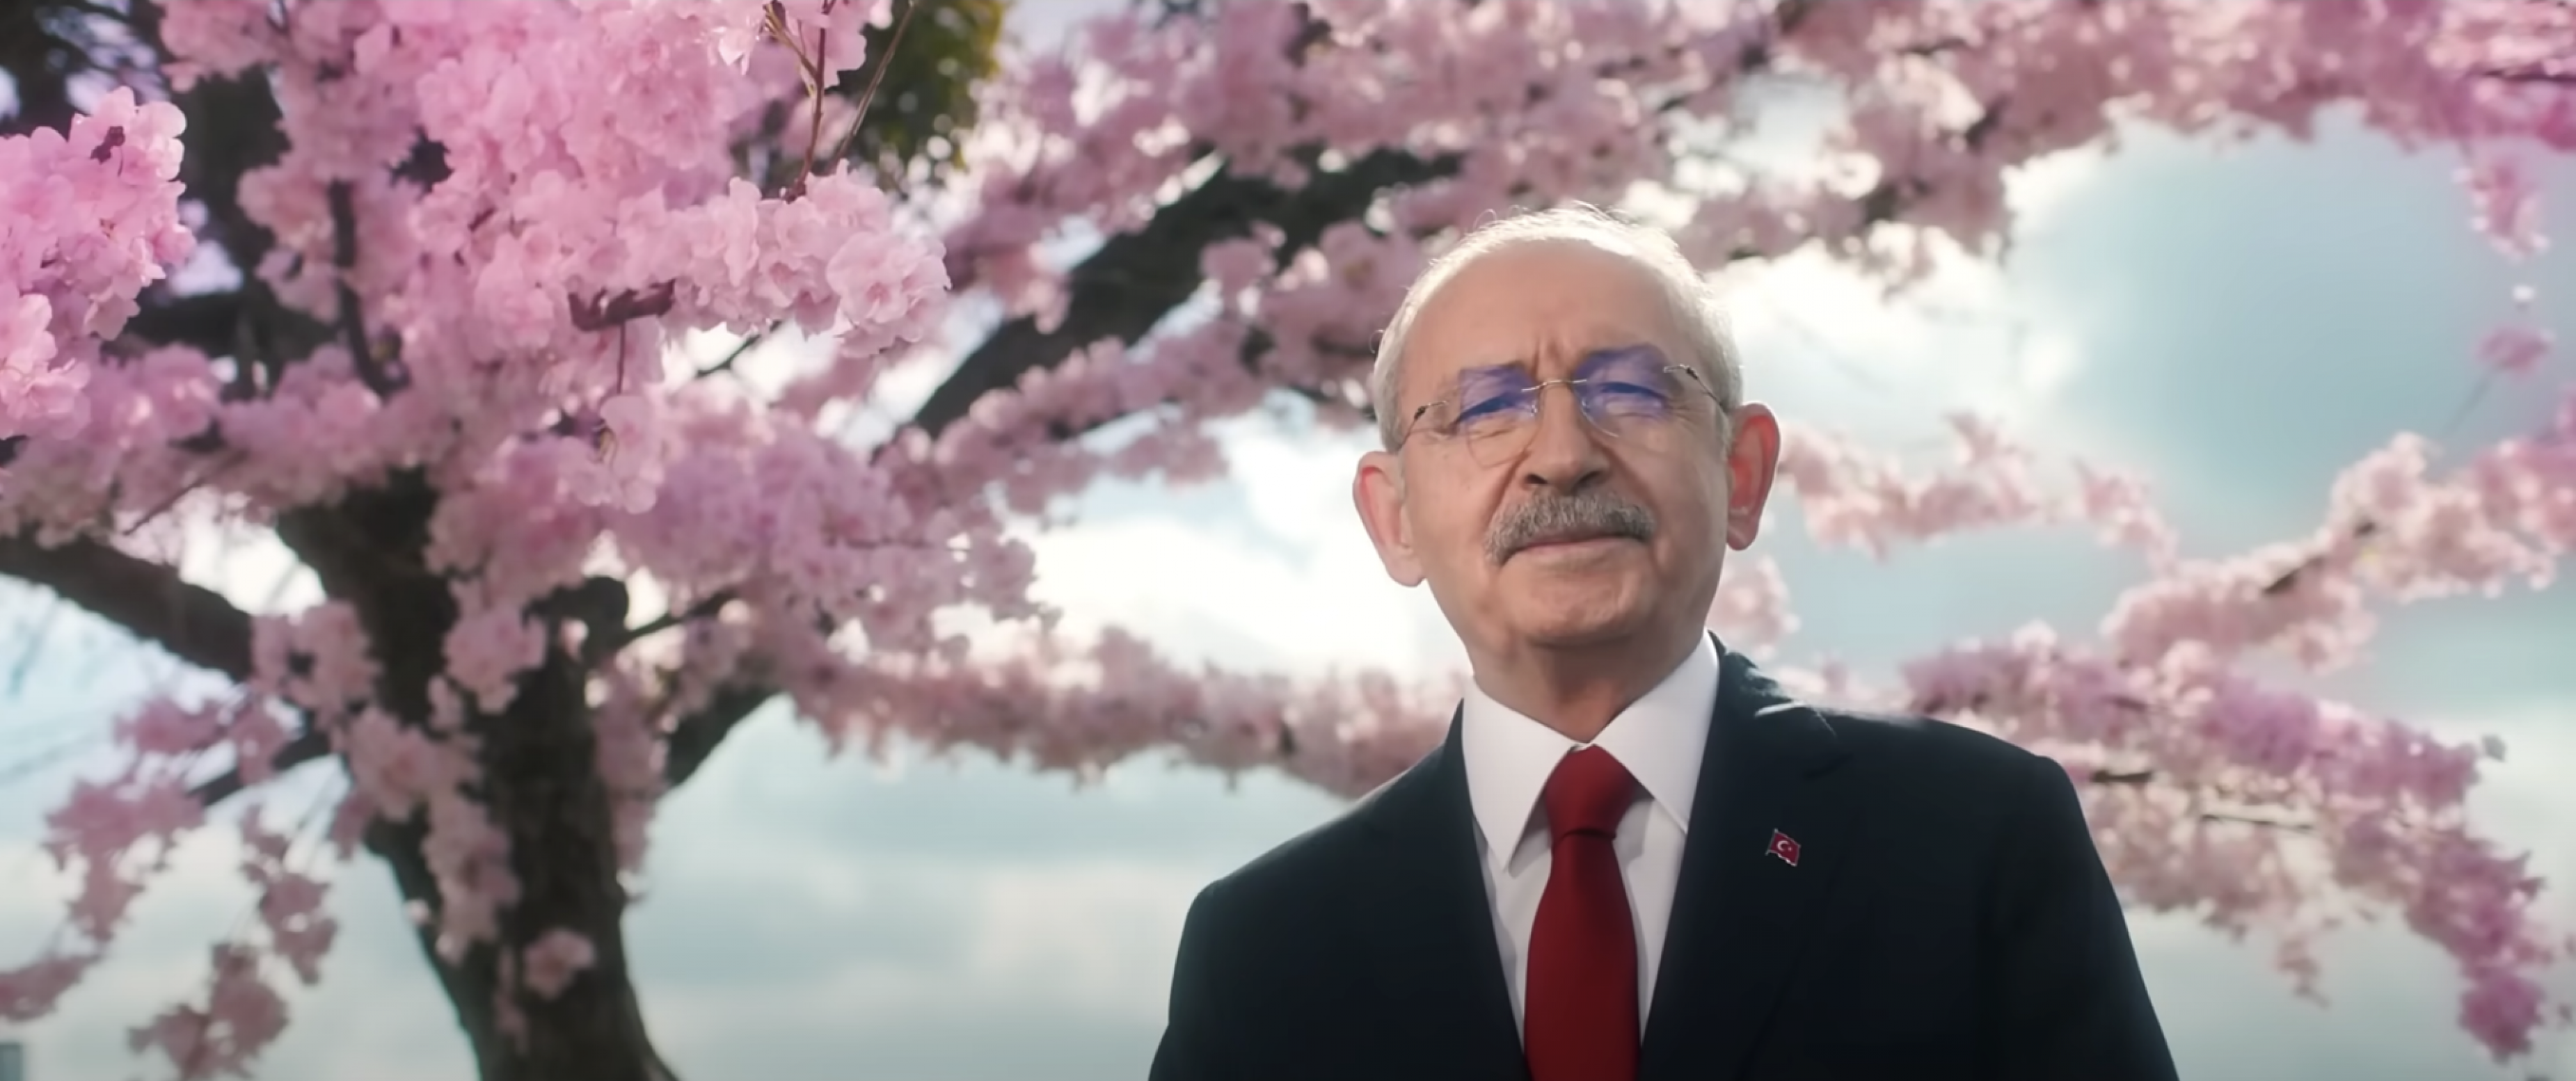 Kemal Kılıçdaroğlu vor einem blühenden Baum